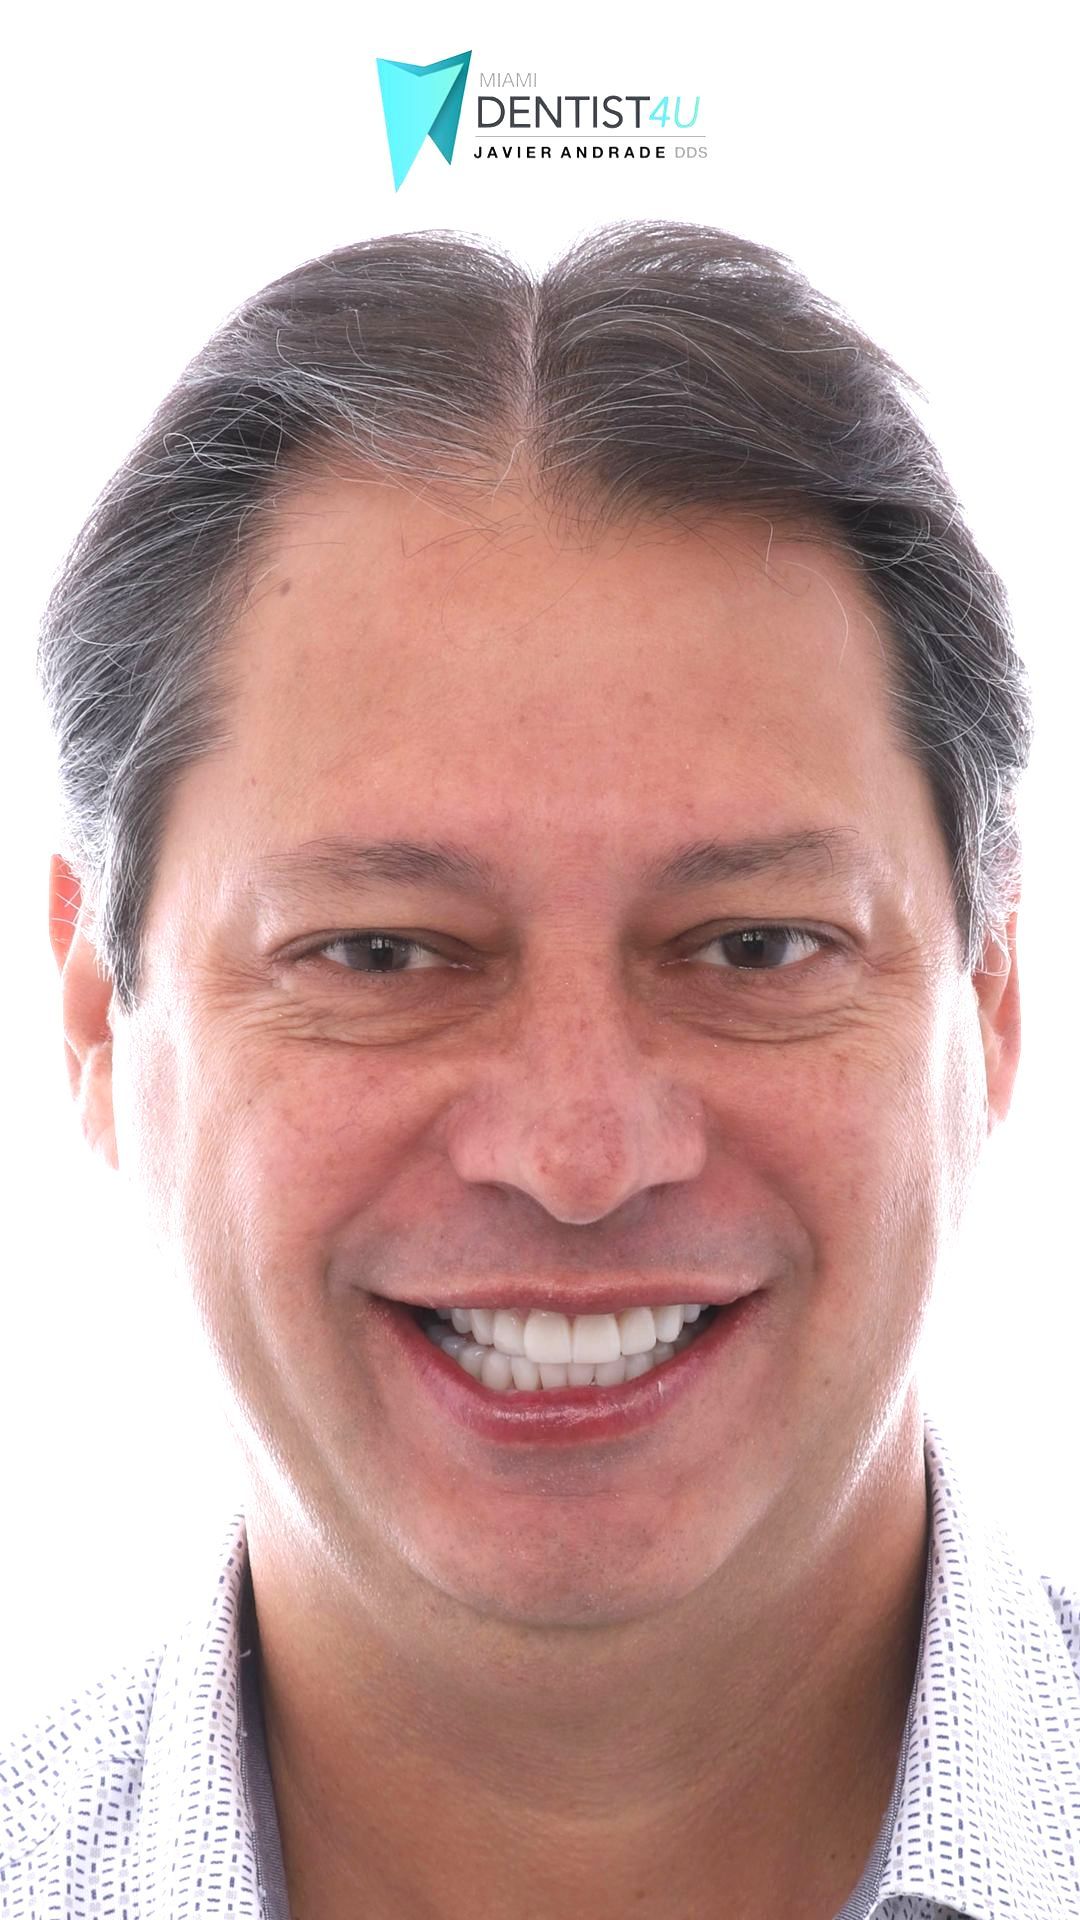 A close up of a man 's face with a smile on his face.